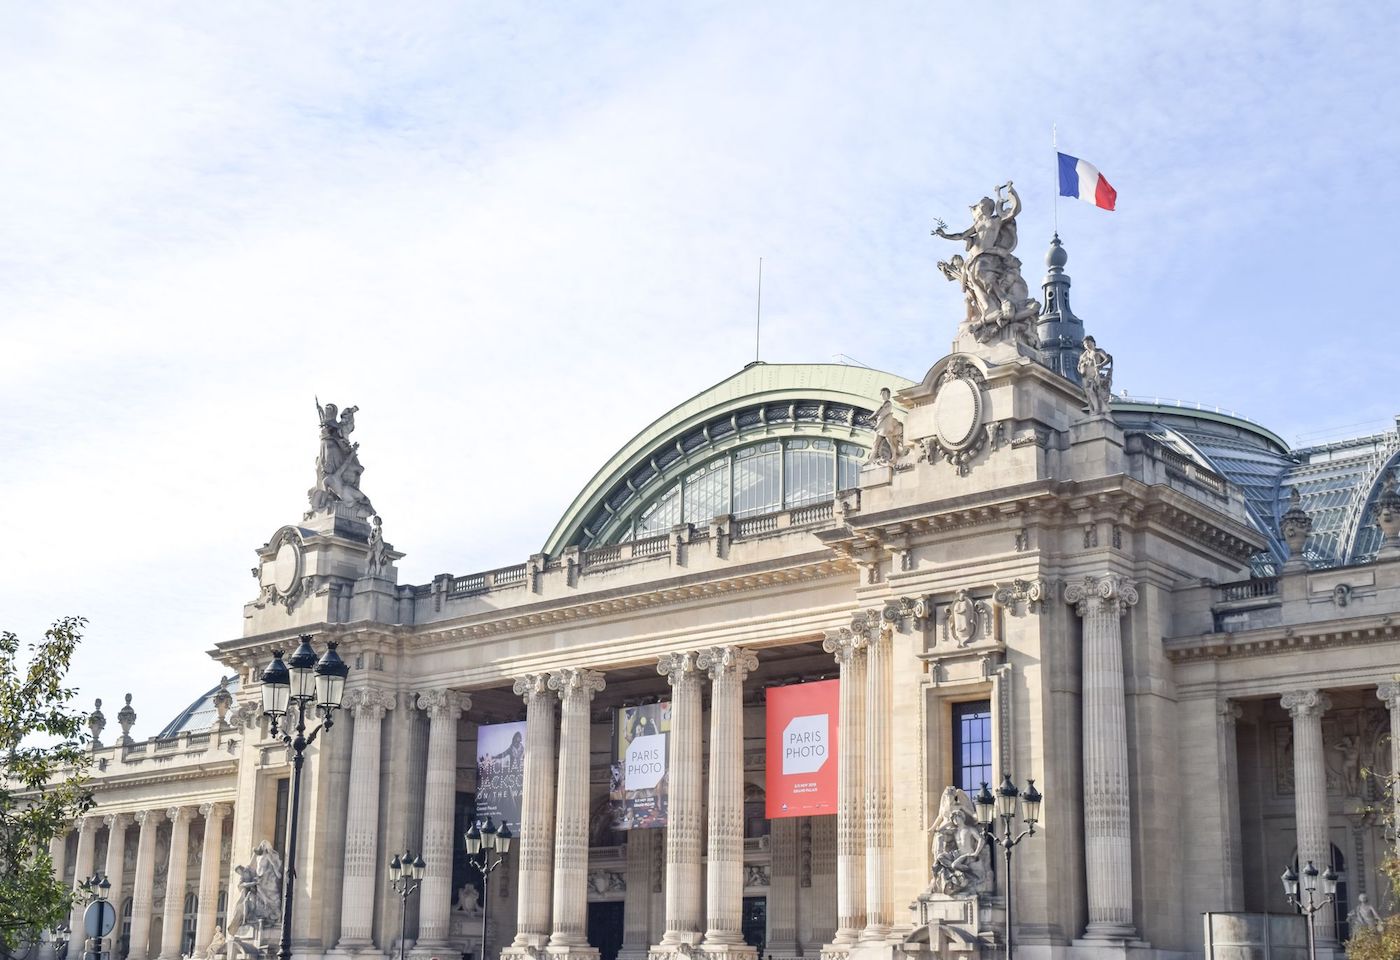 Entrance Grand Palais, Paris